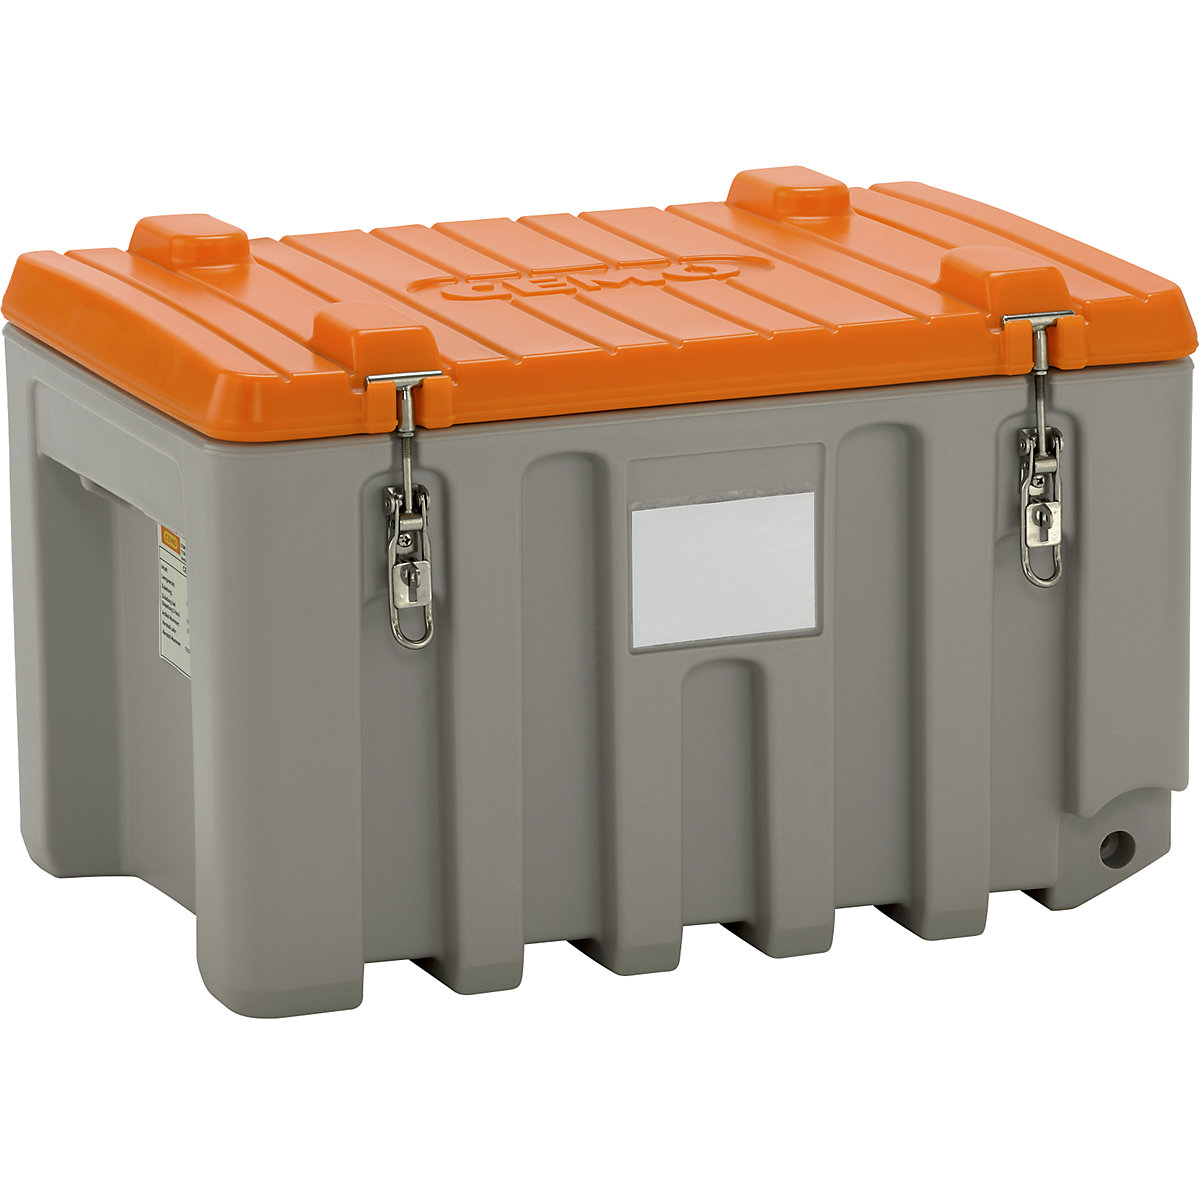 CEMO – Cutie universală din polietilenă, capacitate 150 l, capacitate portantă 100 kg, gri / portocaliu